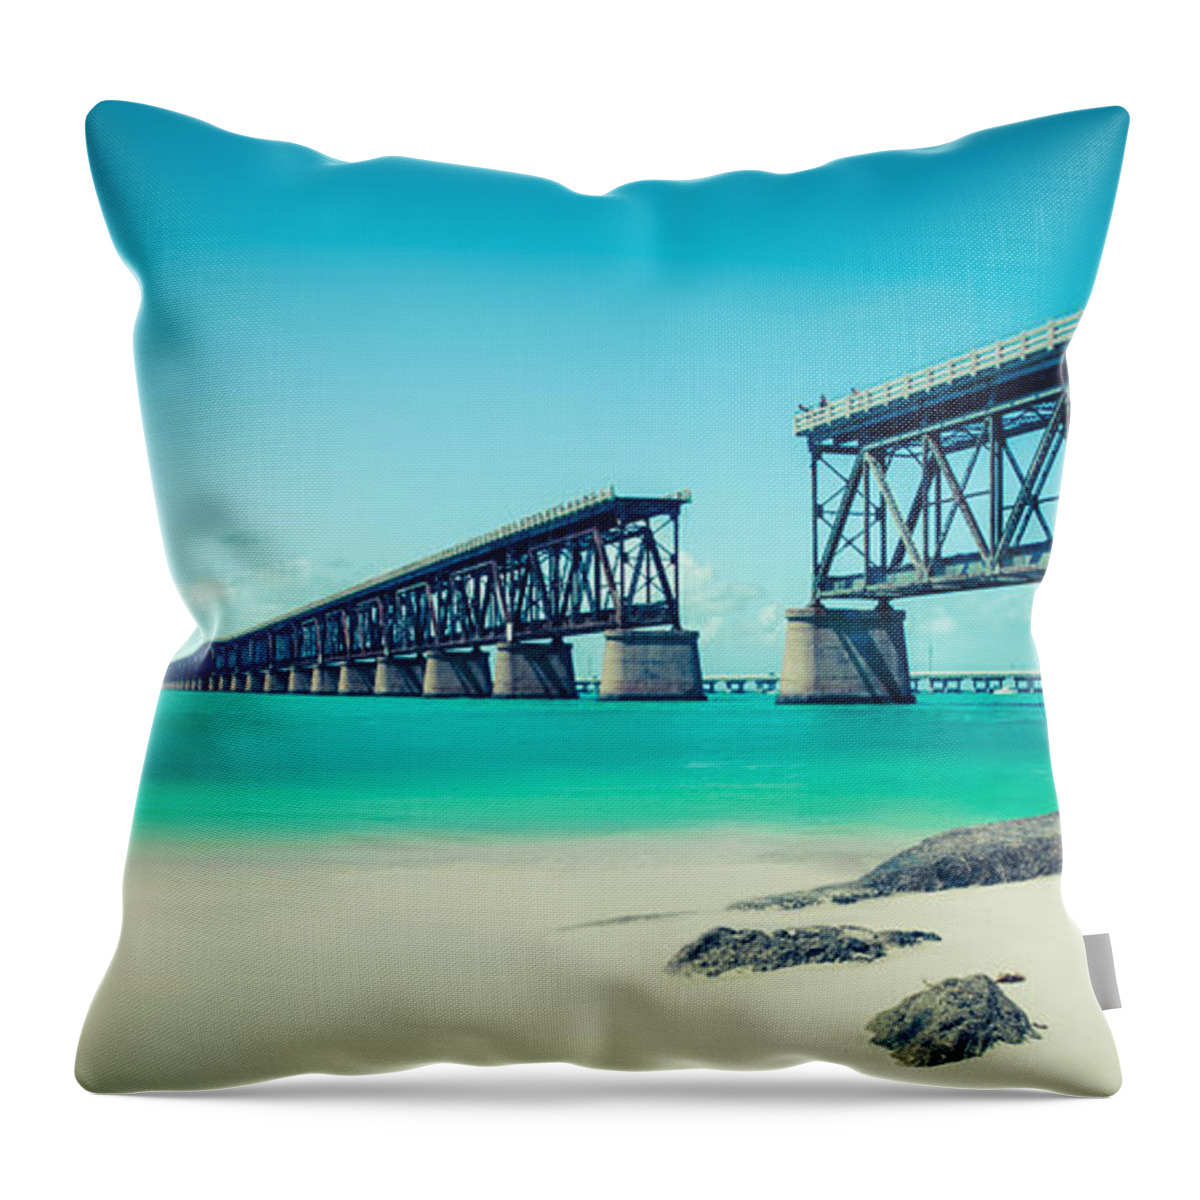 Atlantic Throw Pillow featuring the photograph Bahia Hondas Railroad Bridge by Hannes Cmarits